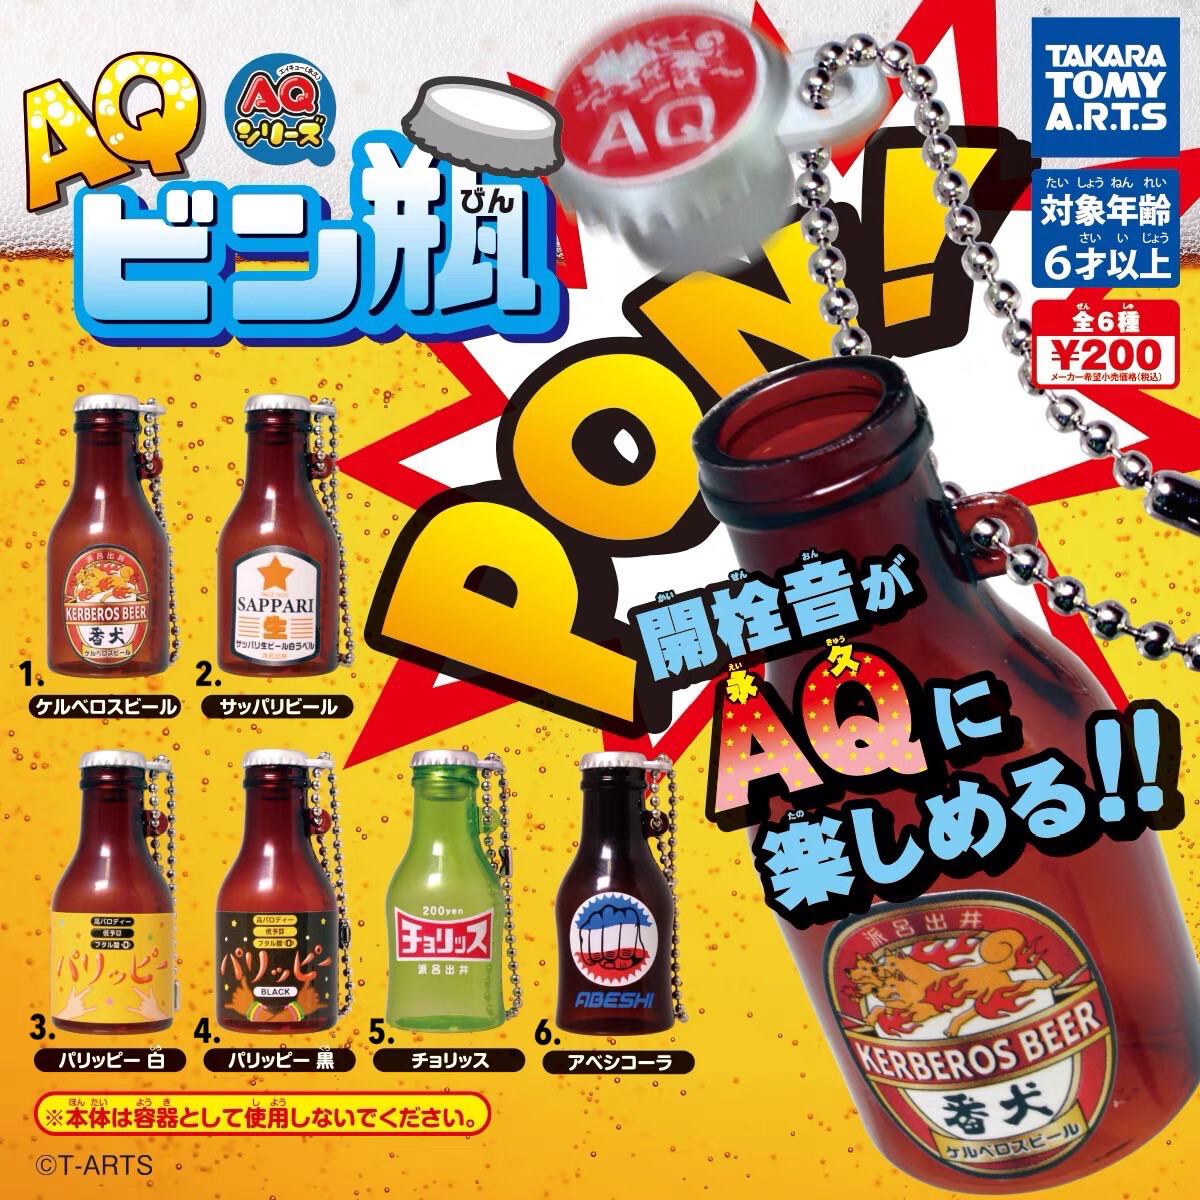 Takara Tomy PON! Beer Beverage Bottle Keychain